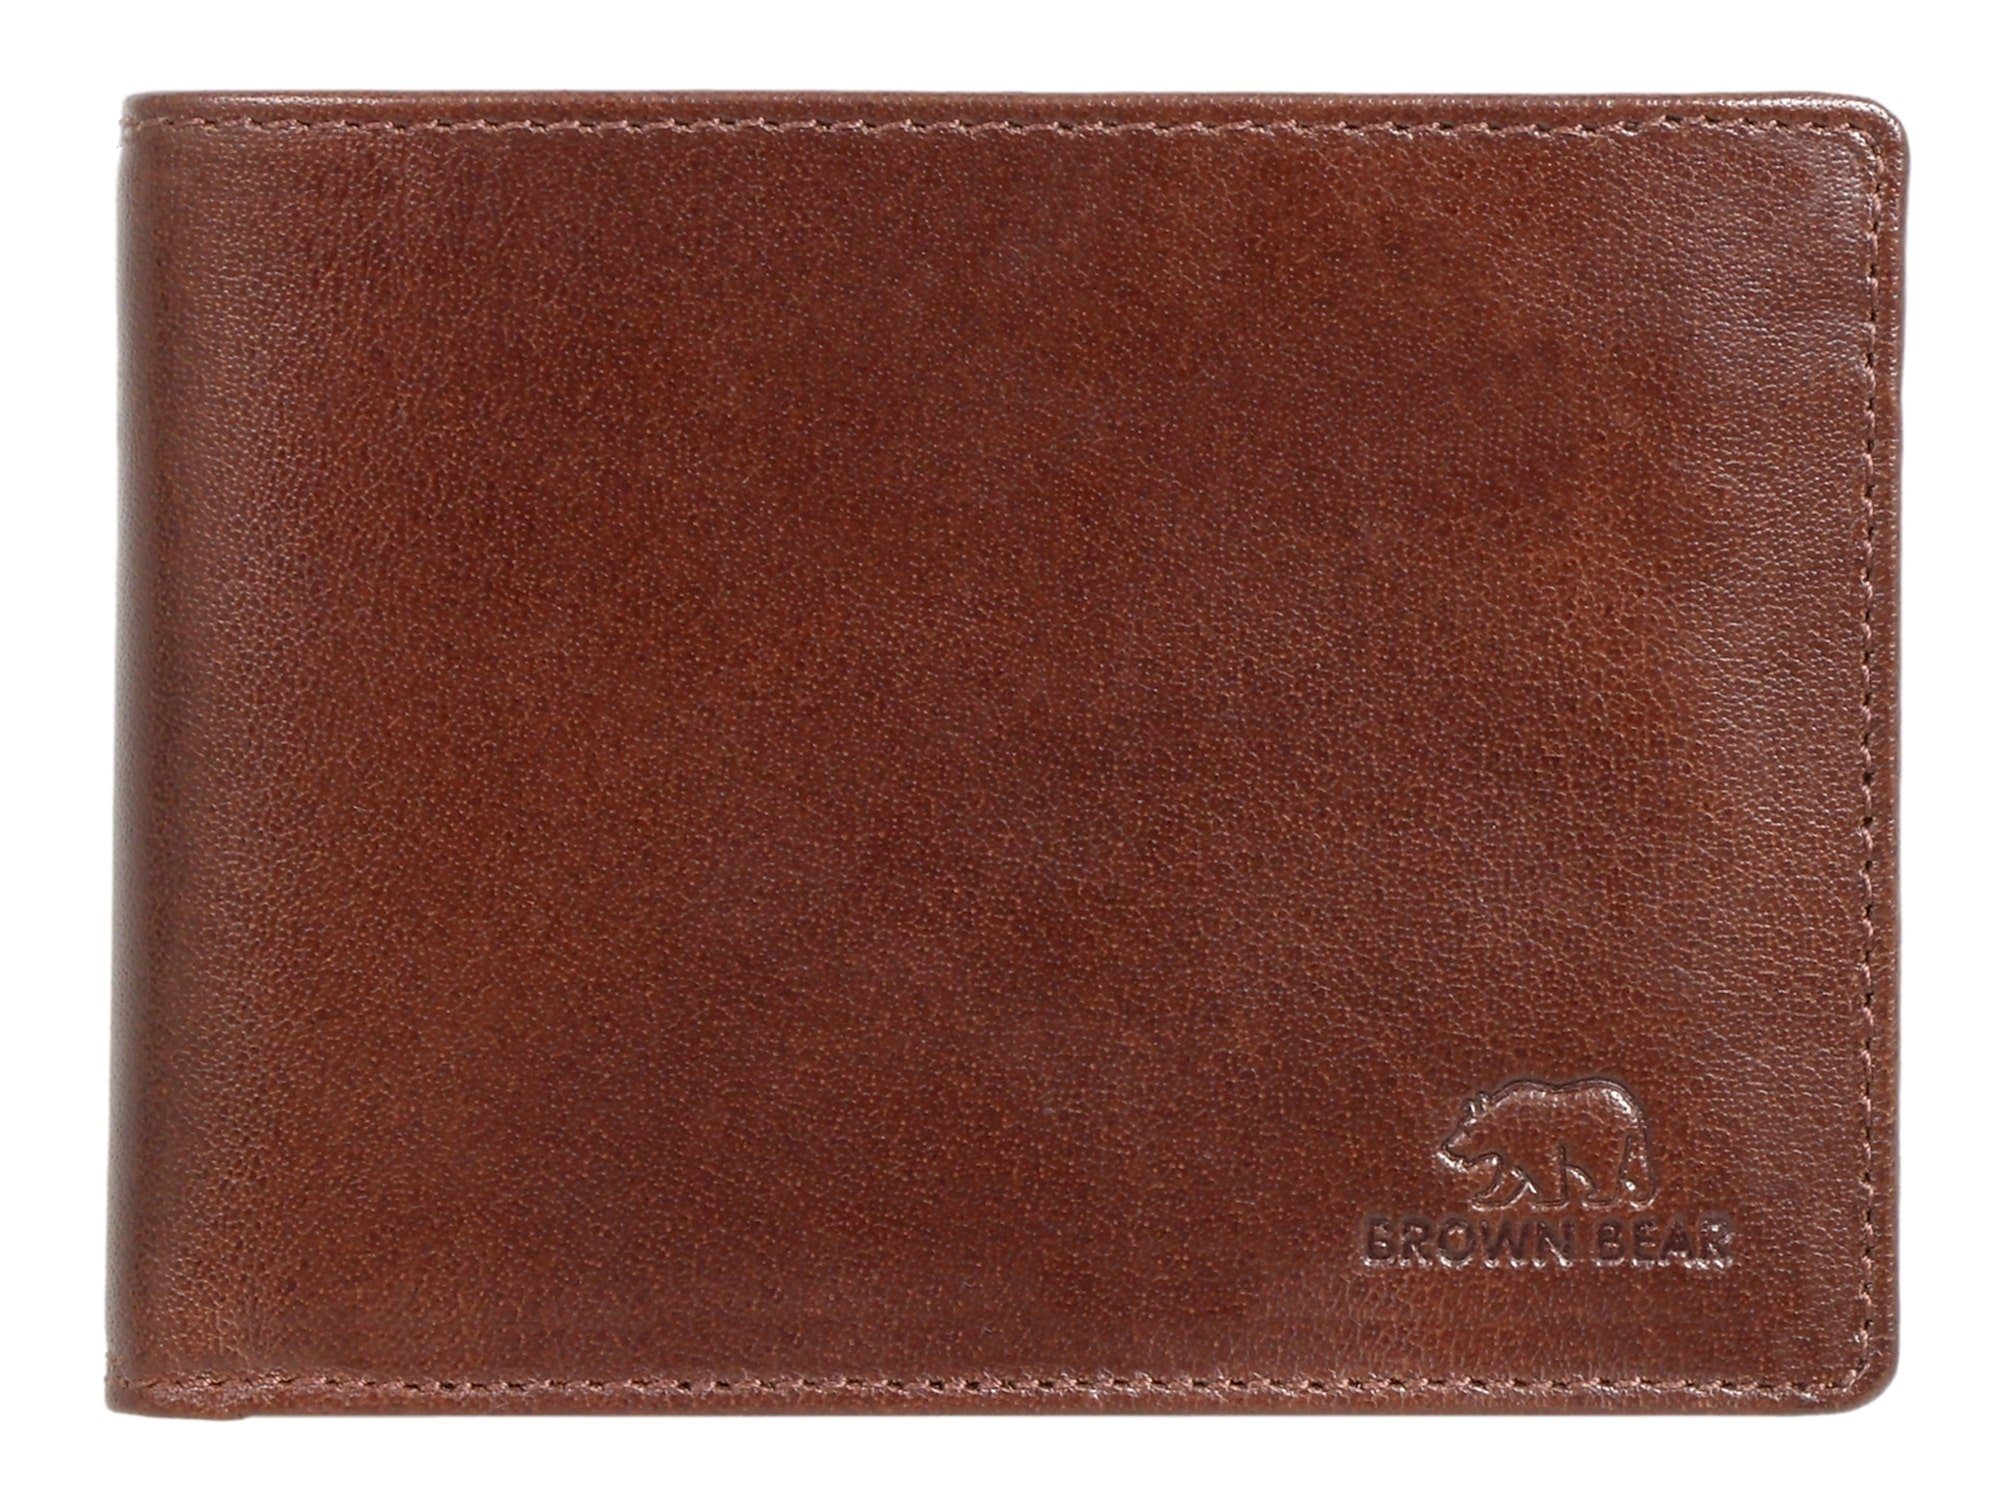 Brown Bear Geldbörse Modell 103 Herren Portemonnaie mit Netzfach, aus Echtleder mit 9 Kartenfächern Farbe Braun Braun Toscana